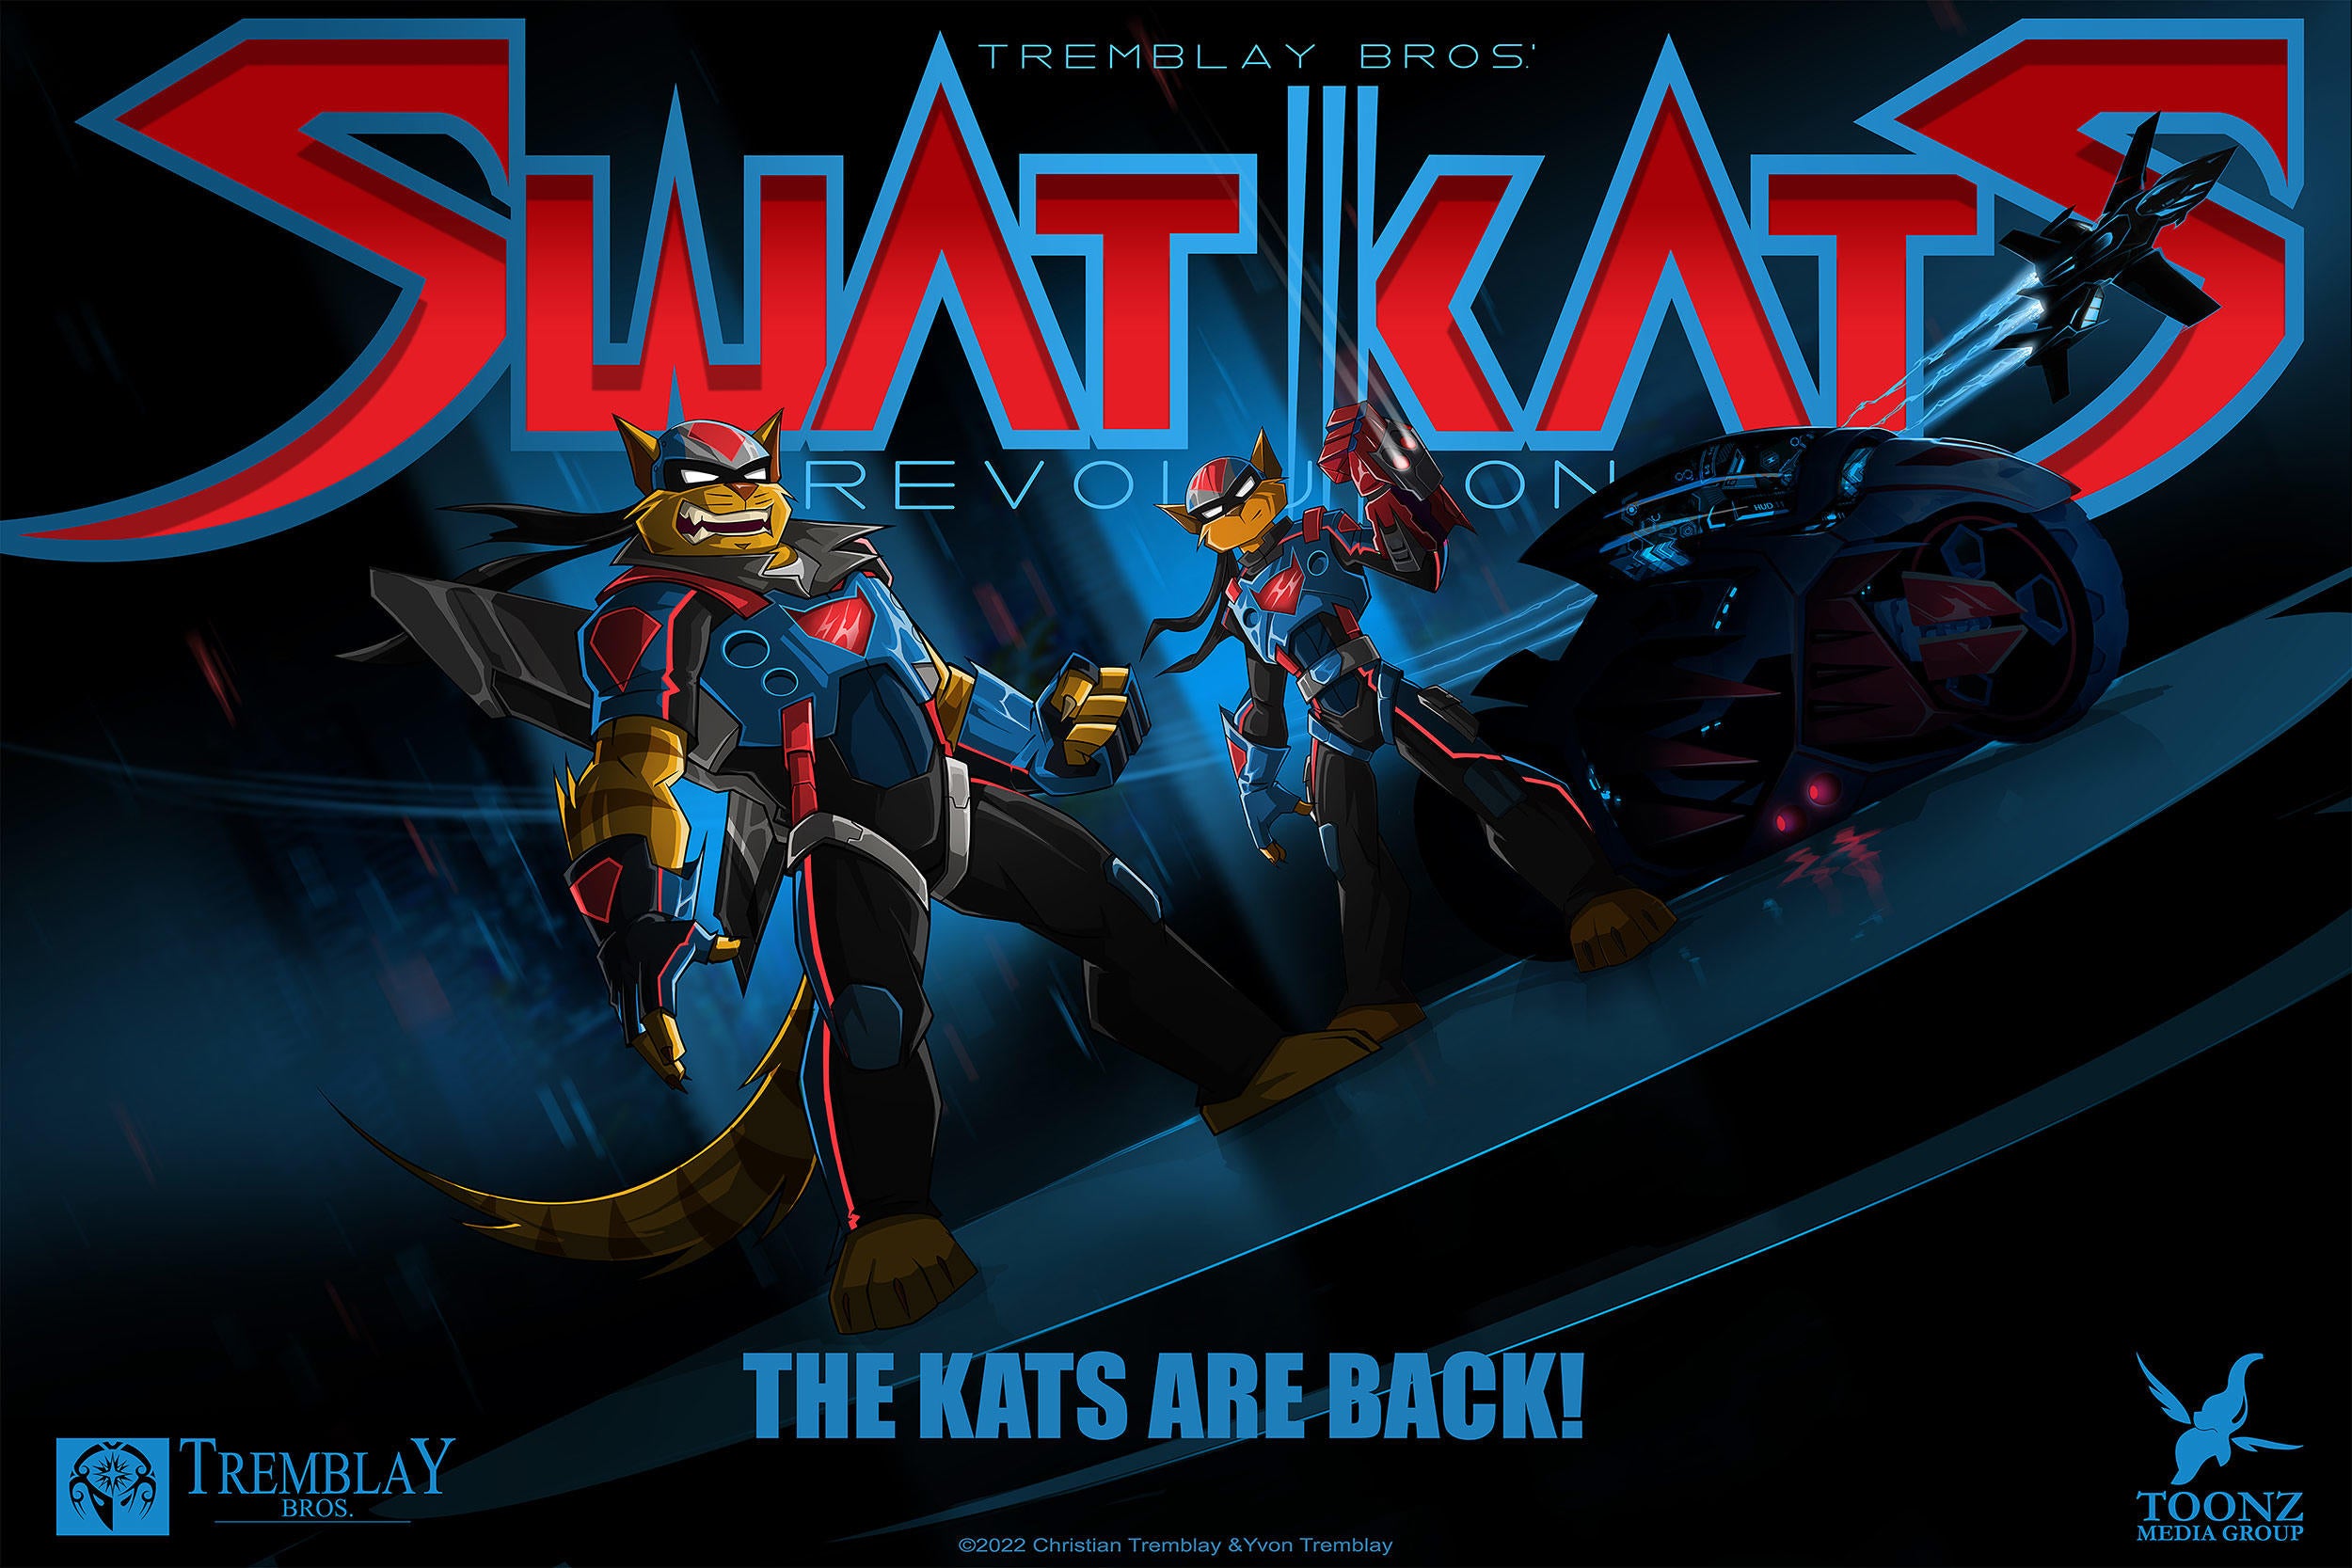 swat-kats-revolution-key-art.jpg